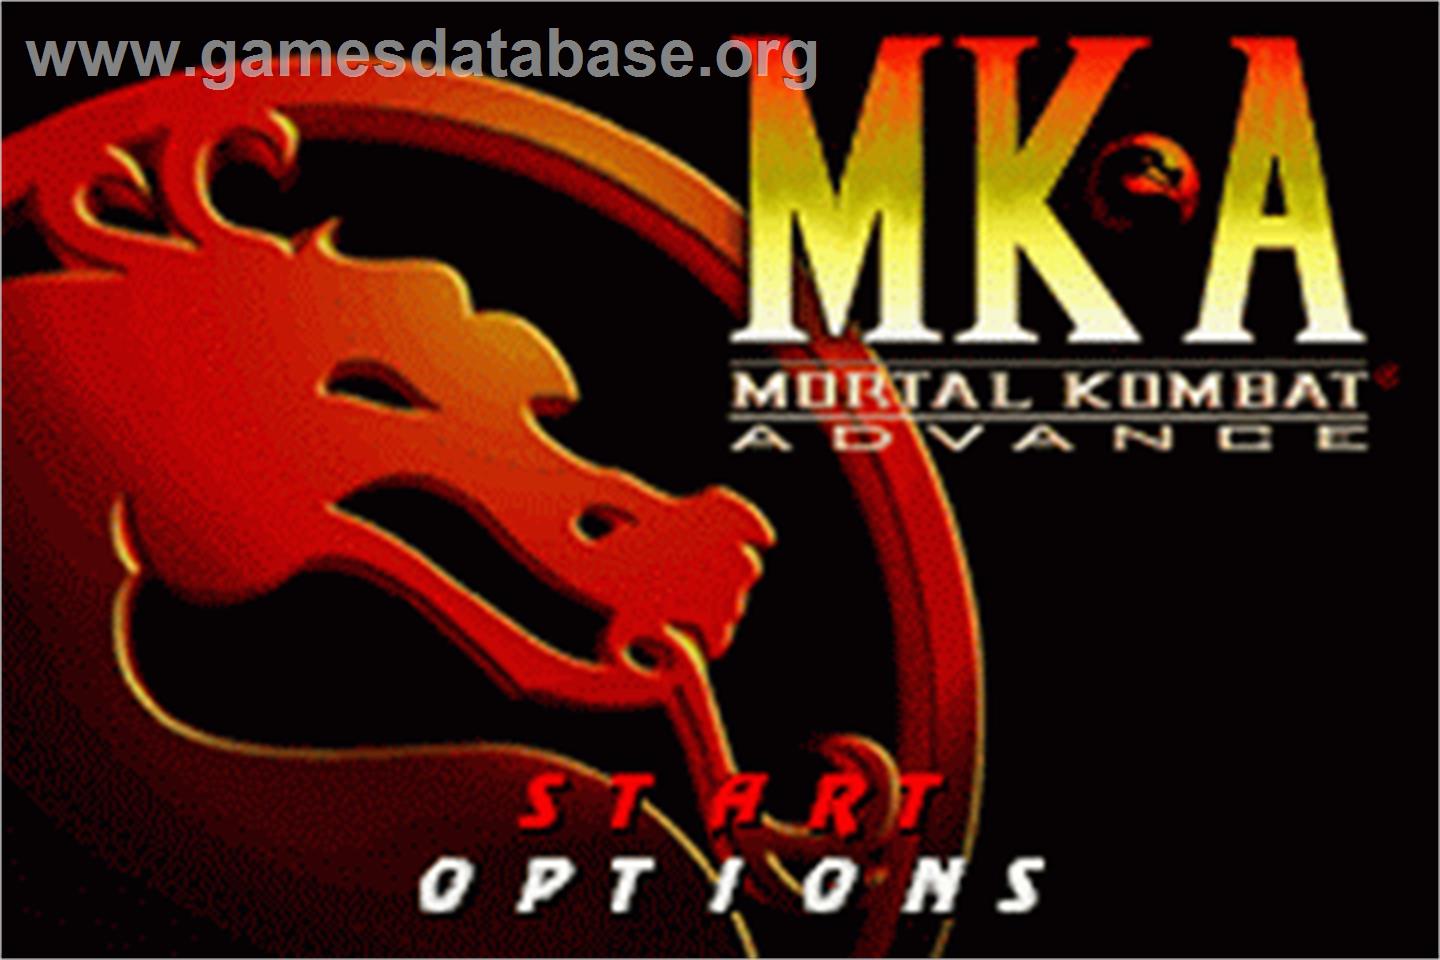 Mortal Kombat Advance - Nintendo Game Boy Advance - Artwork - Title Screen